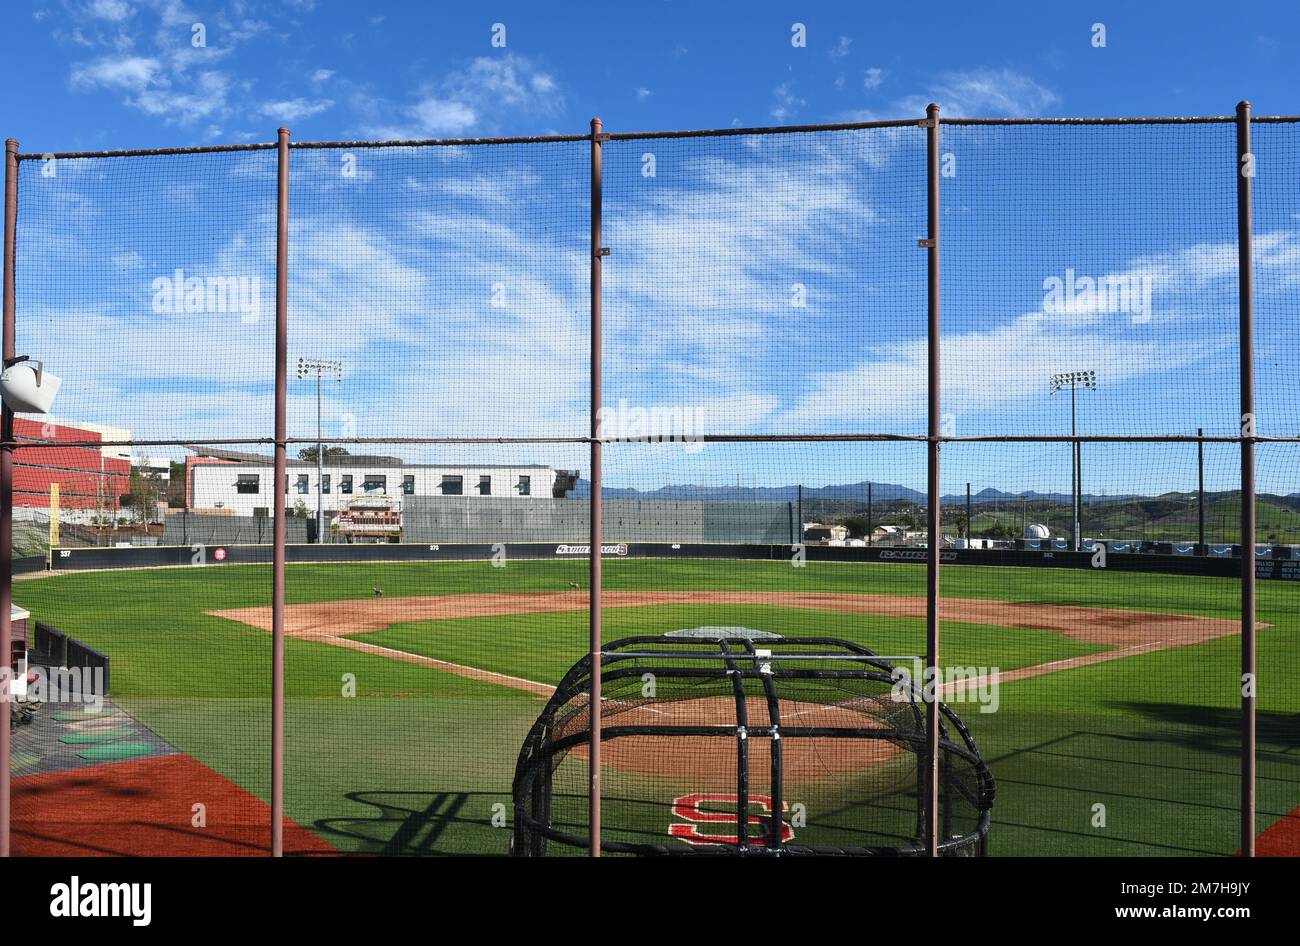 MISSION VIEJO, CALIFORNIA - 8 ENE 2023: Doug Fritz Field en el campus de Saddleback College, hogar del equipo de béisbol Gauchos. Foto de stock